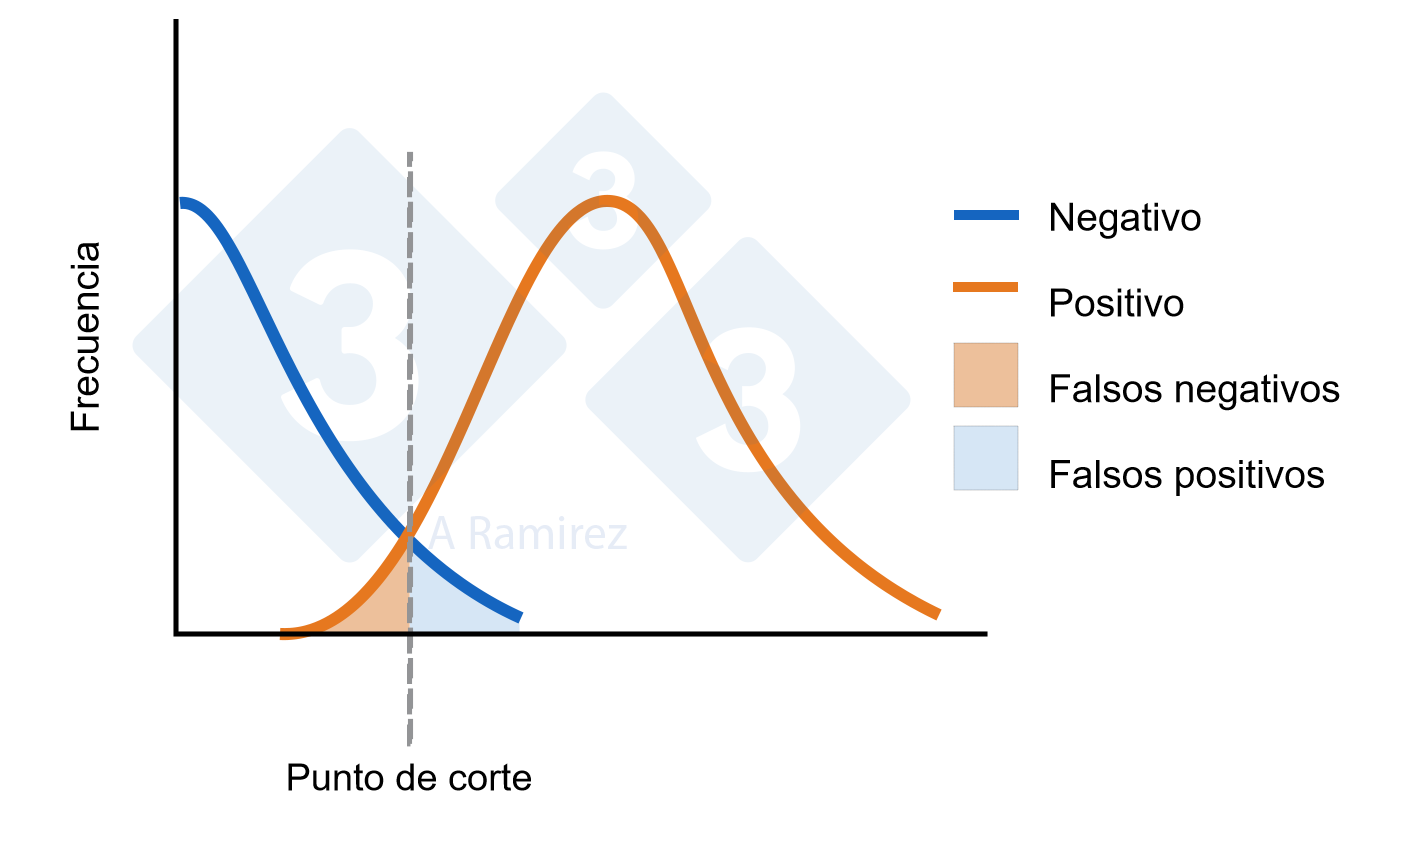 <p>Figura 1. Diagrama que demuestra el punto de corte establecido para un ELISA. La curva azul representa una distribuci&oacute;n normal de animales negativos. La curva naranja representa una distribuci&oacute;n normal de animales expuestos. Se indica el &aacute;rea para falsos positivos y falsos negativos.</p>
